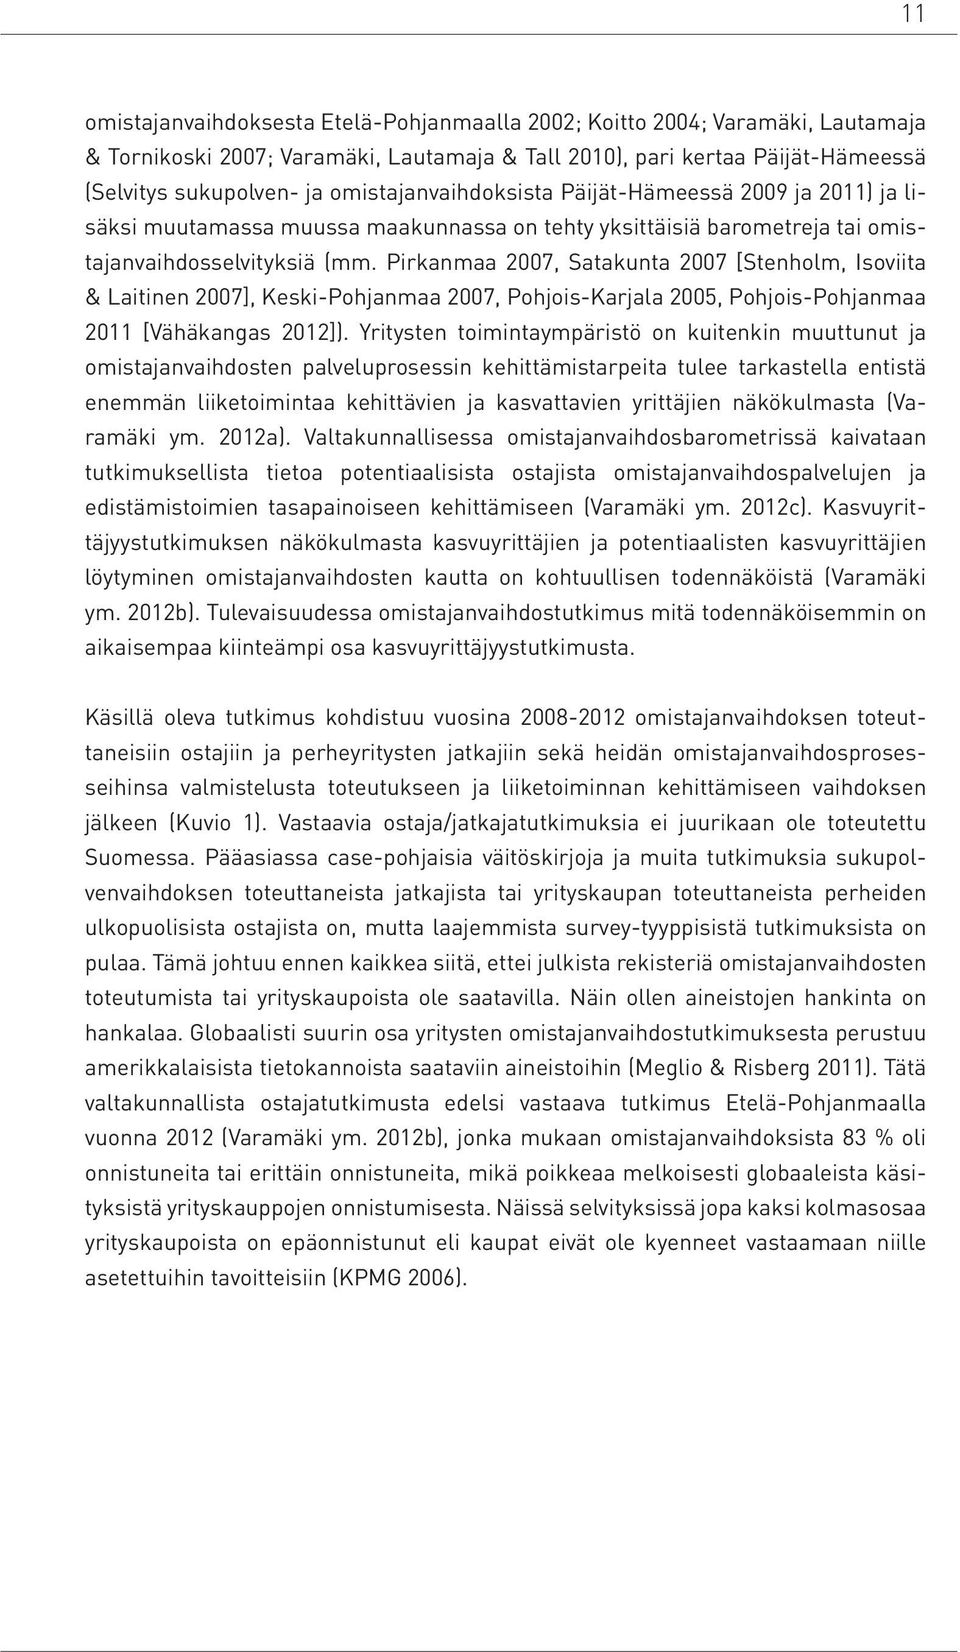 Pirkanmaa 2007, Satakunta 2007 [Stenholm, Isoviita & Laitinen 2007], Keski-Pohjanmaa 2007, Pohjois-Karjala 2005, Pohjois-Pohjanmaa 2011 [Vähäkangas 2012]).